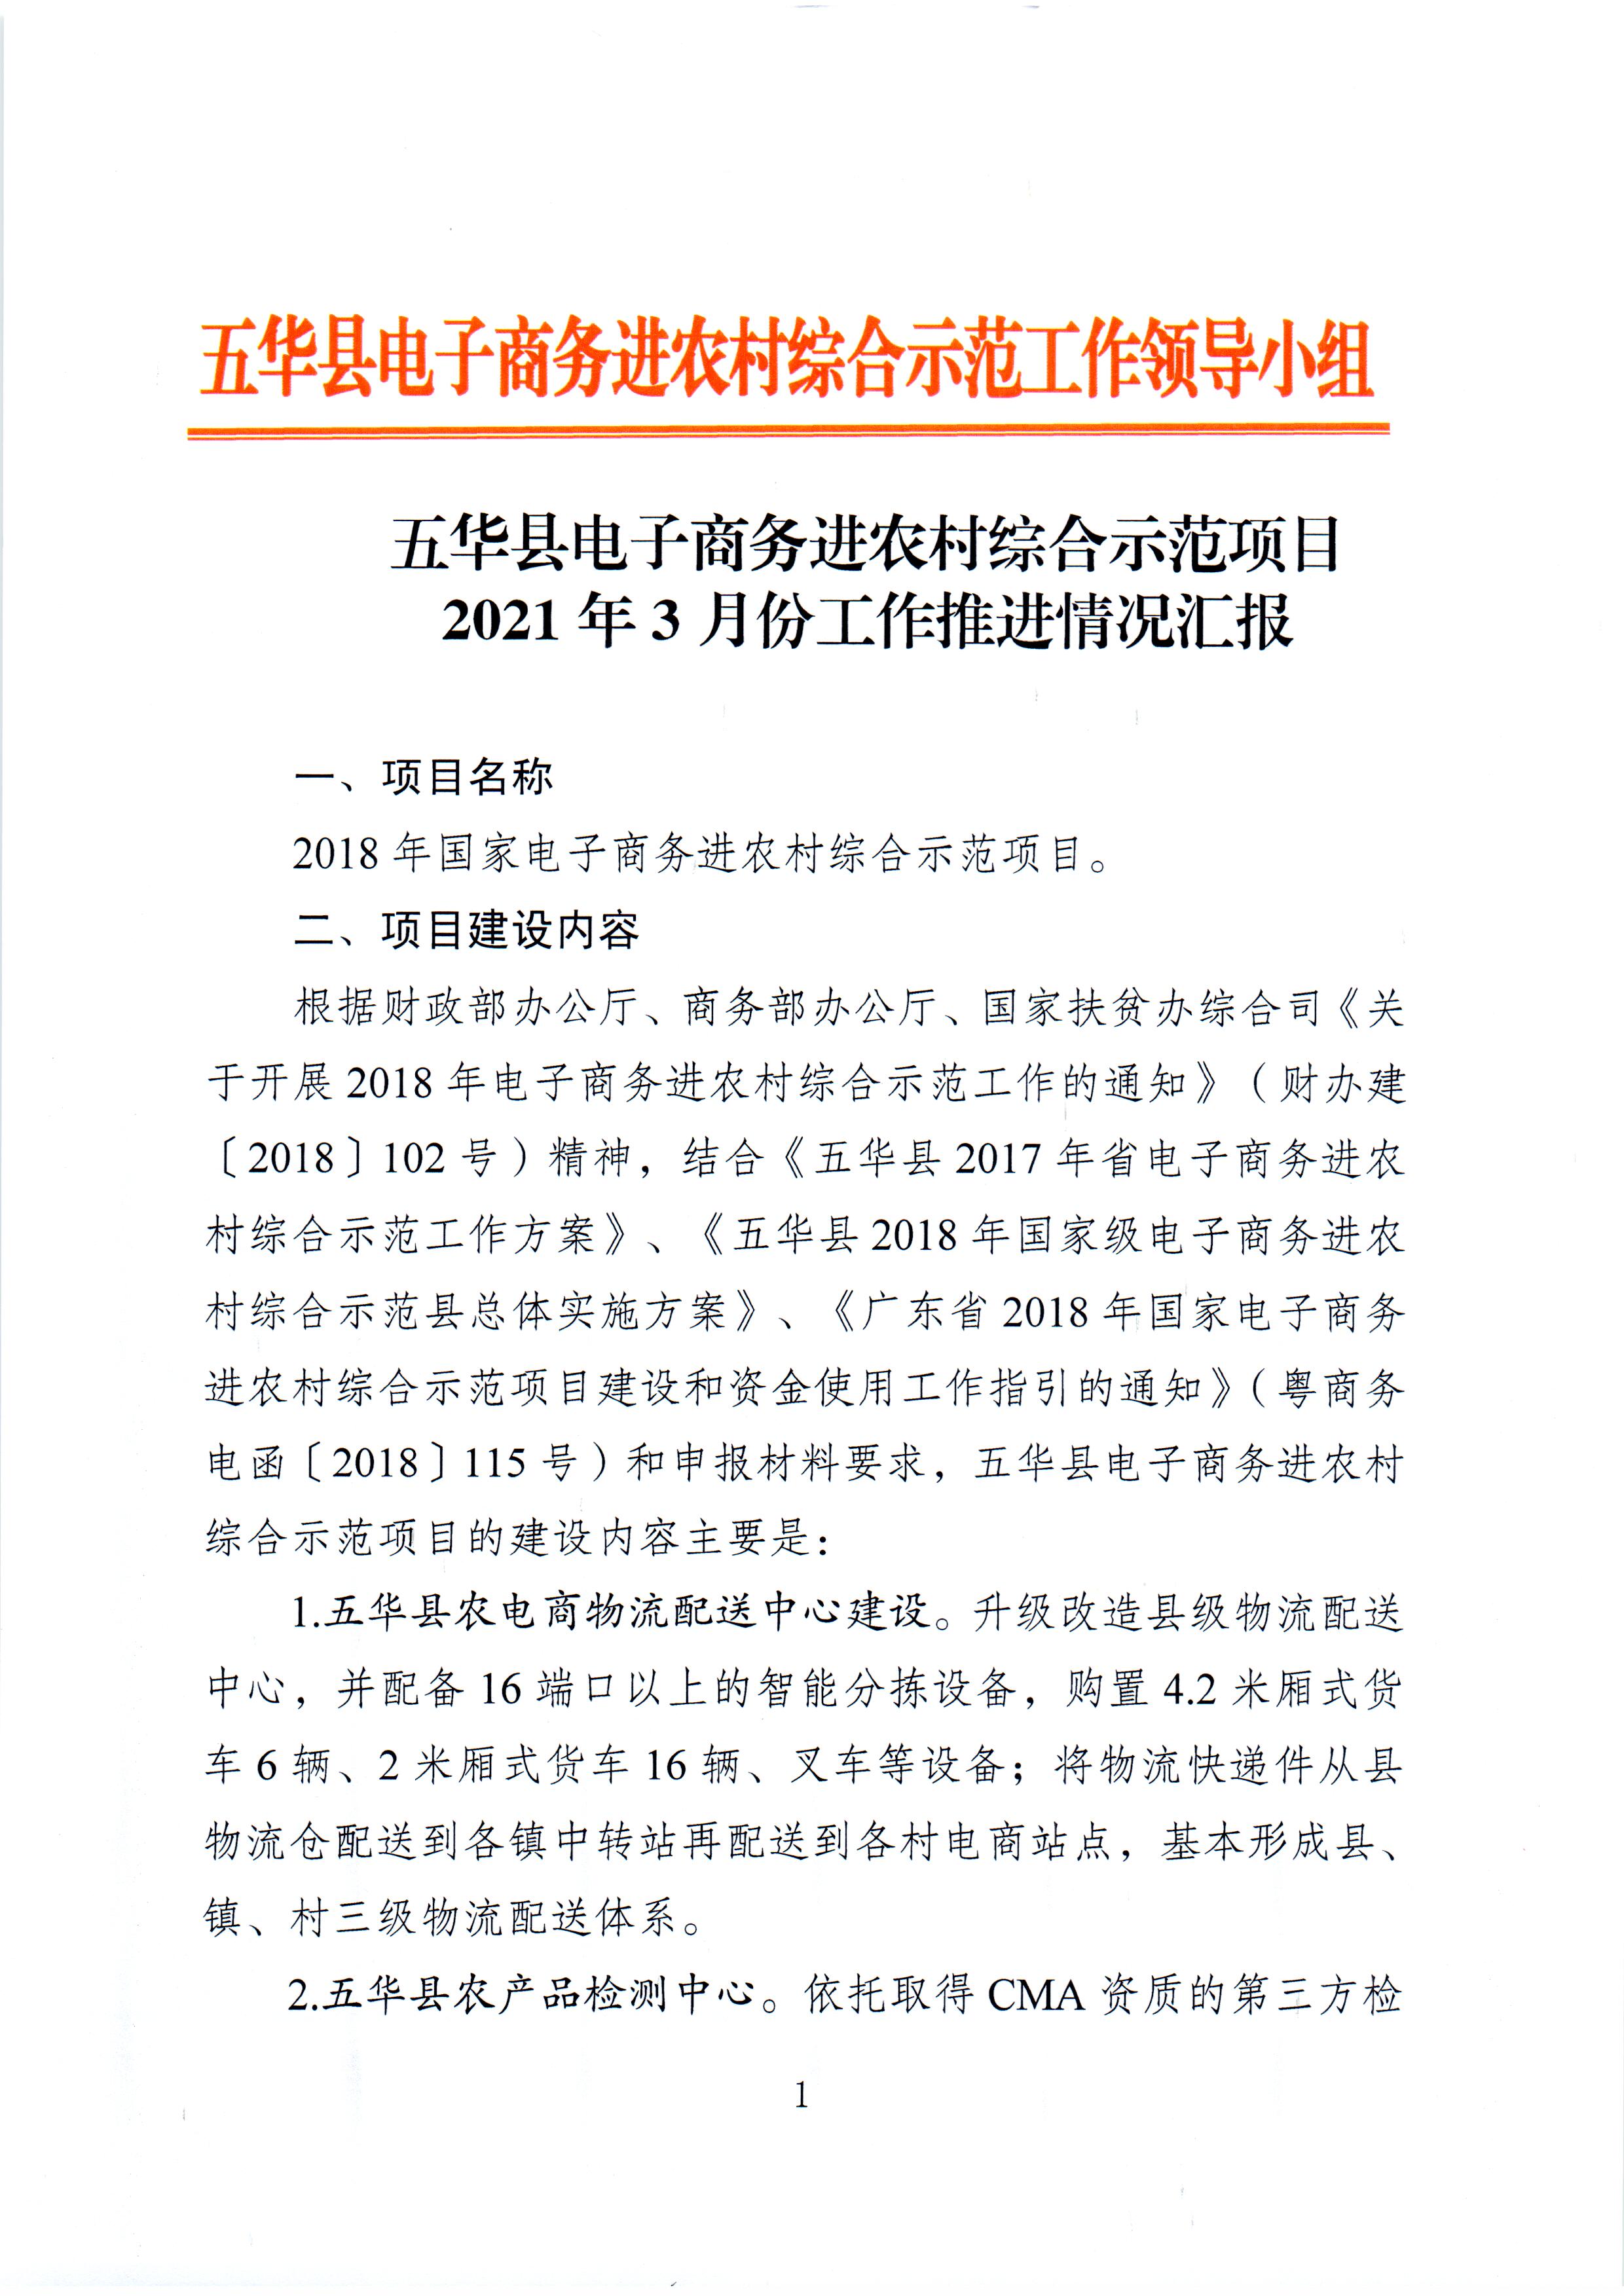 1、五华县电子商务进农村综合示范项目2021年3月工作推进情况（领导小组办公室）--（2021年4月5日确定版） (1).jpg